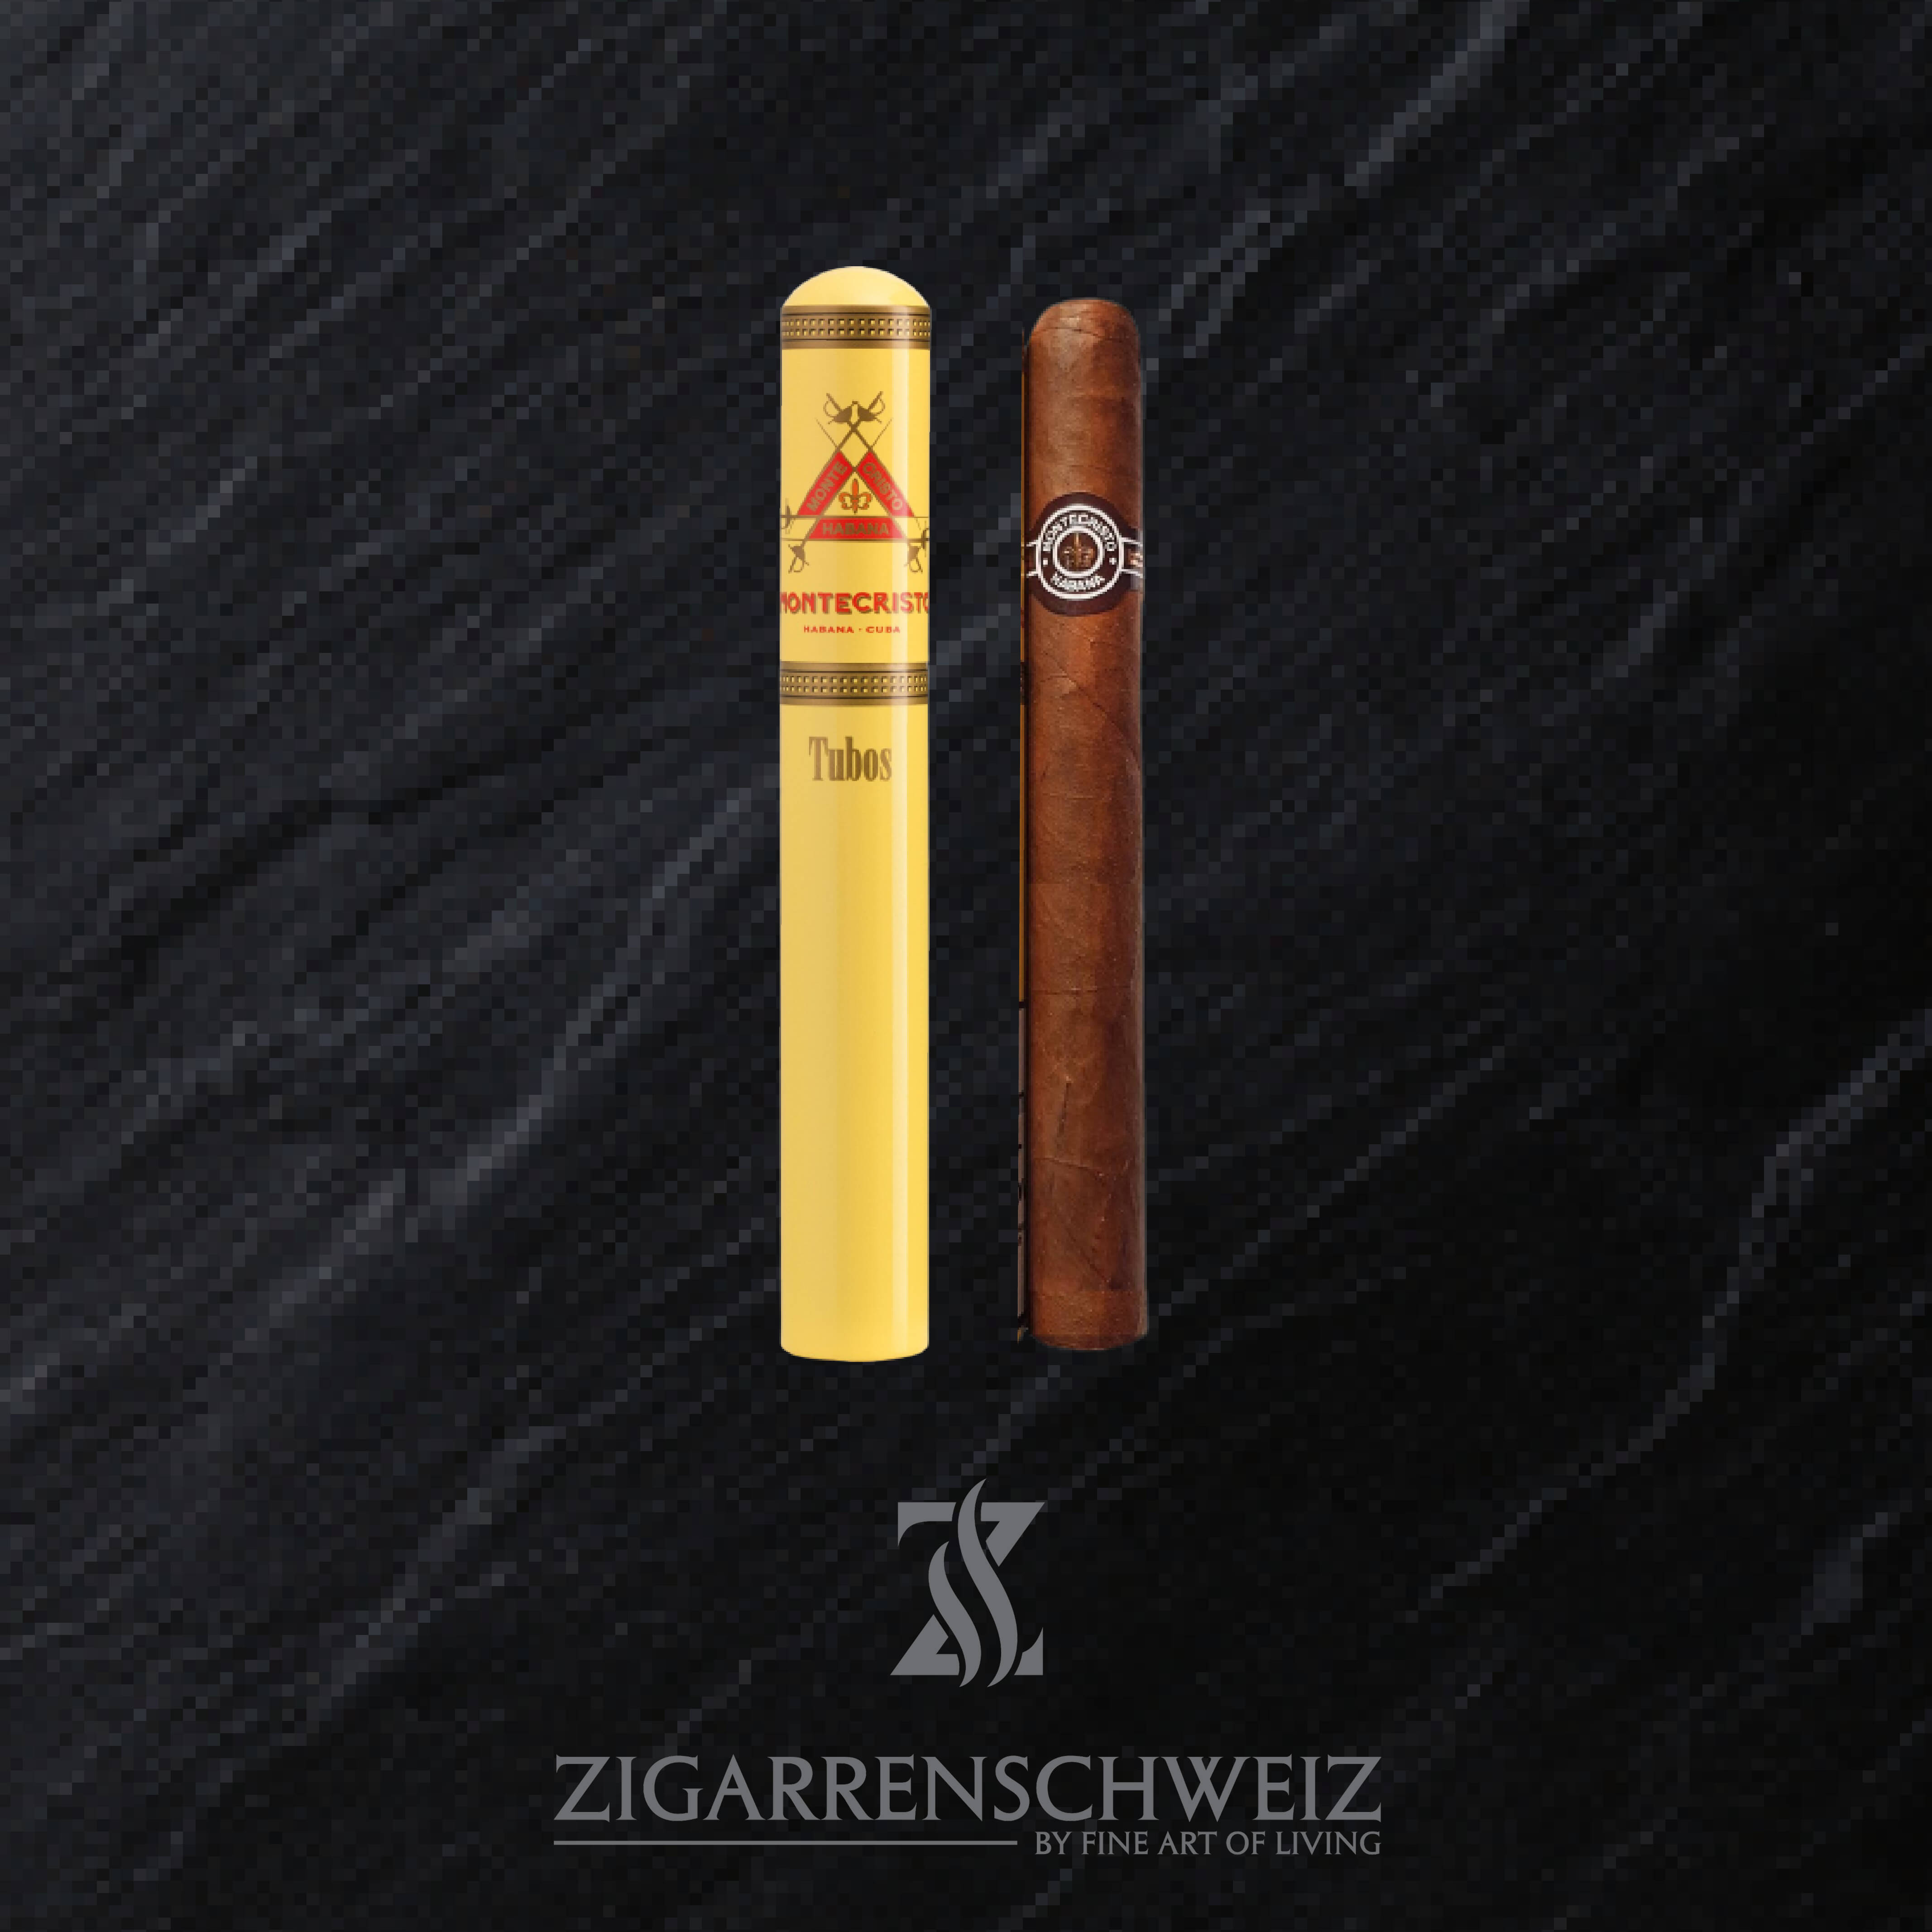 Montecristo Tubos Zigarren online kaufen  Zigarrenschweiz Online Zigarren  Boutique